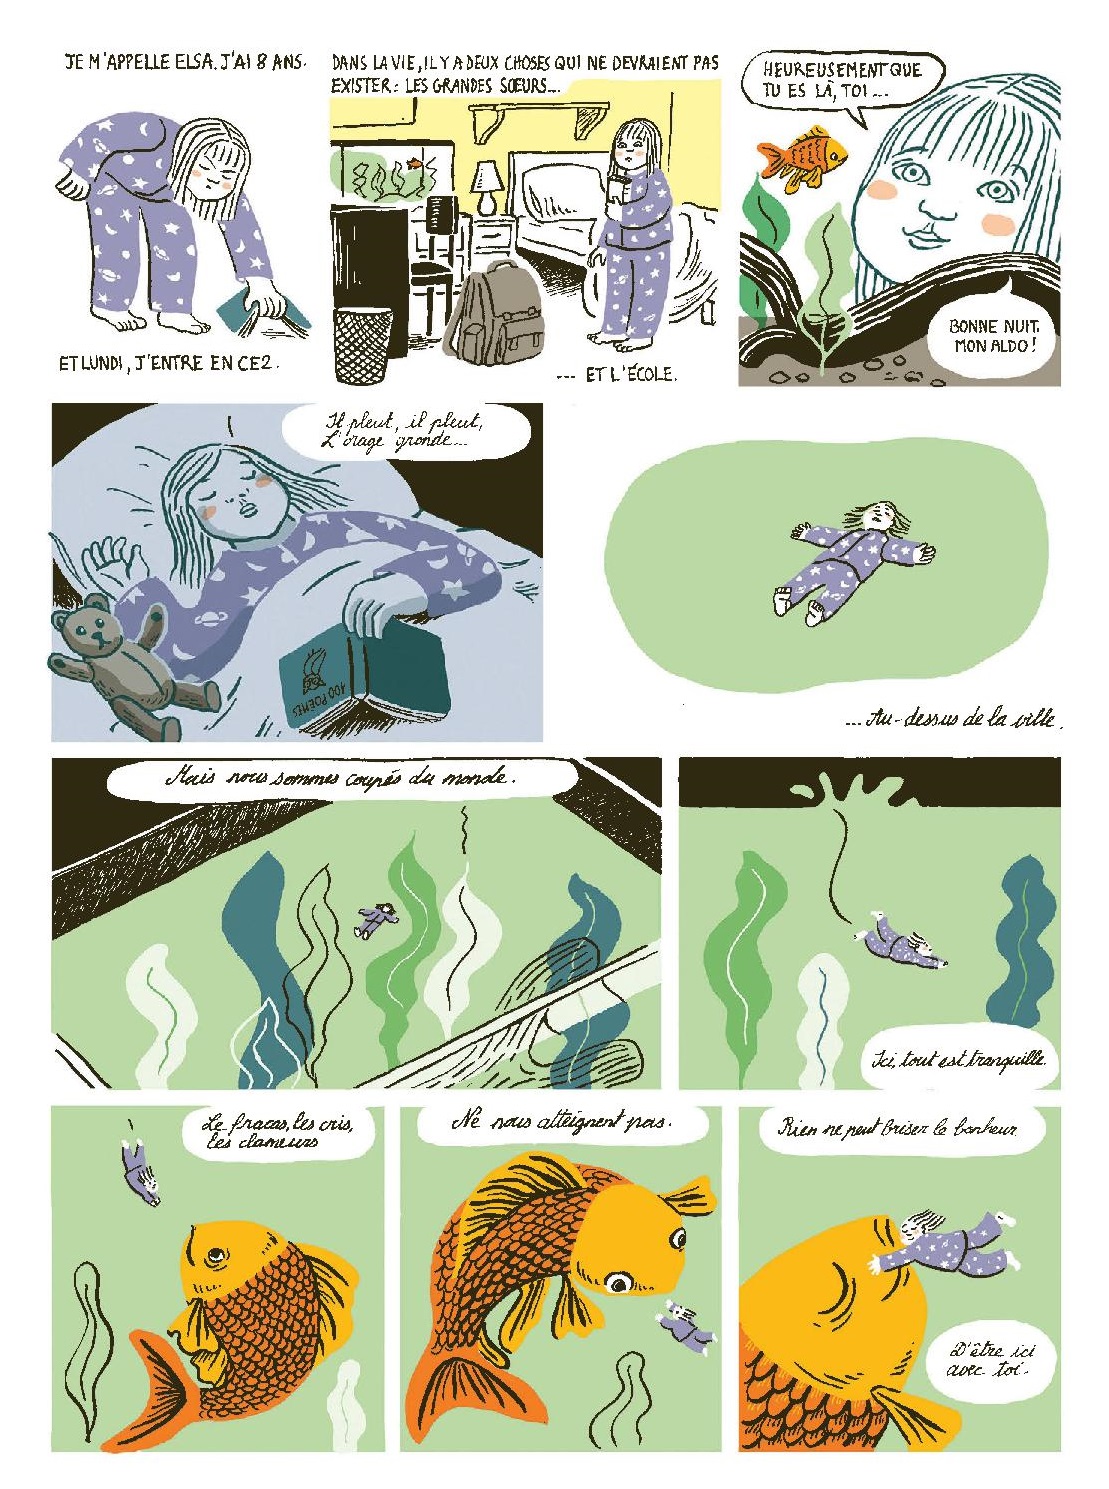 Le Monde des animaux perdus page 4